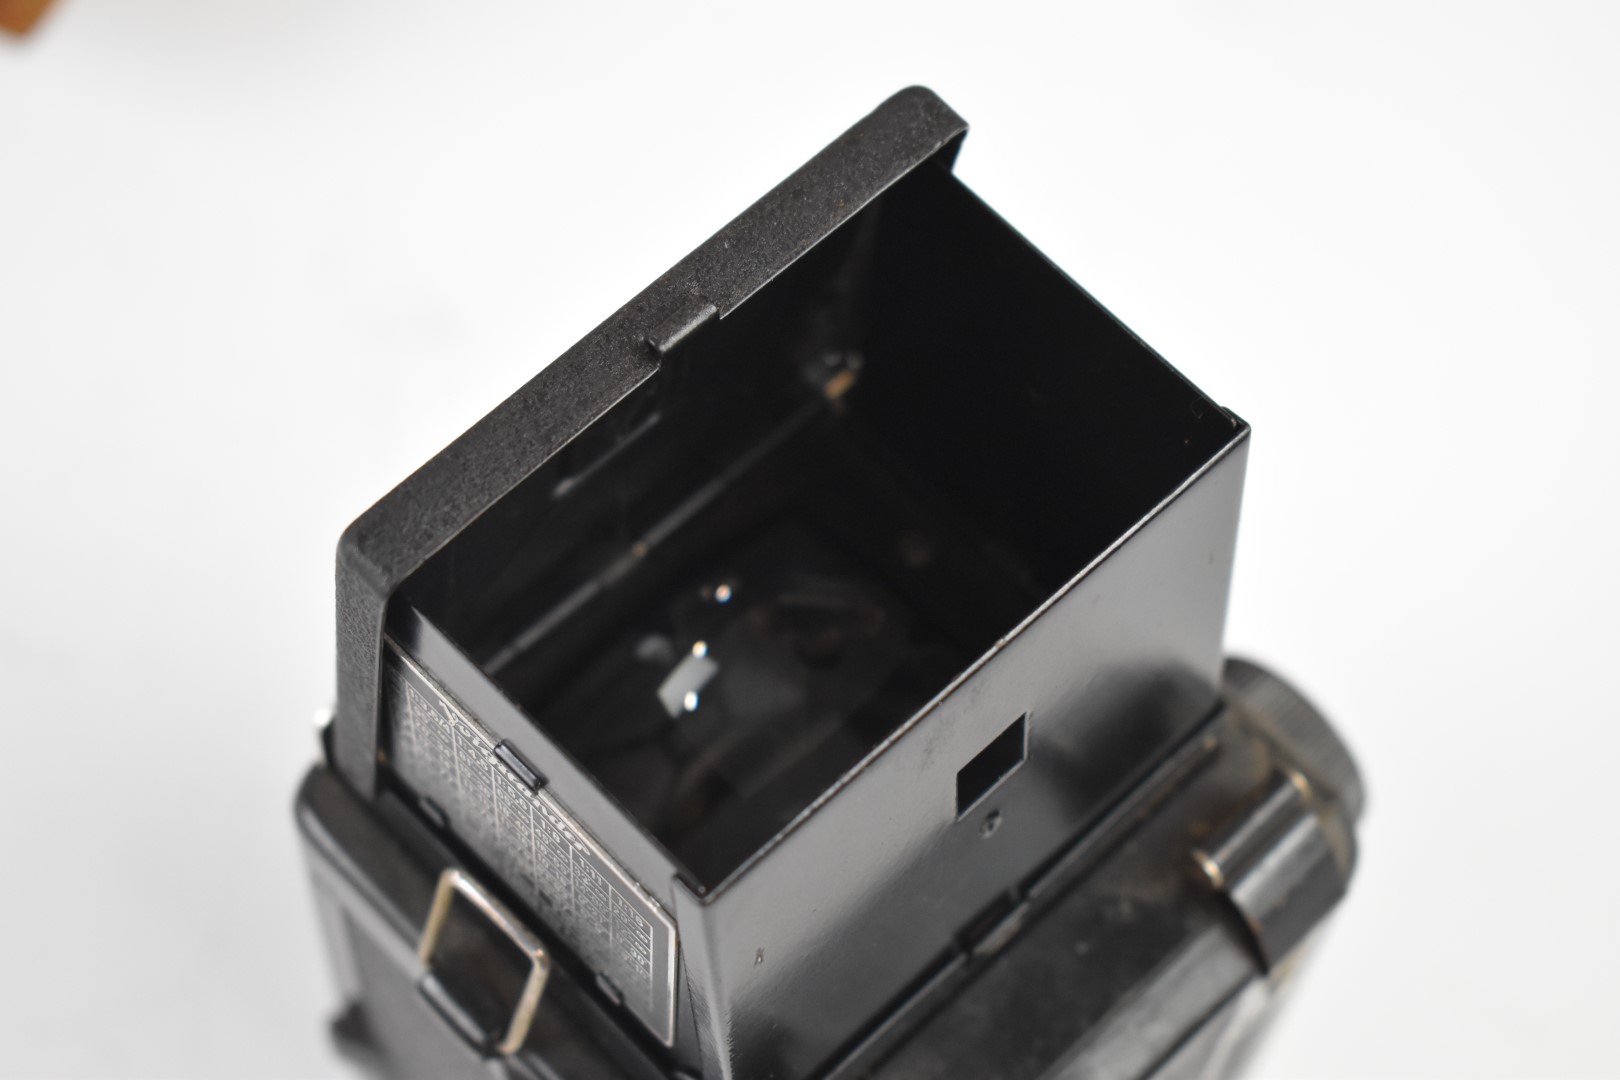 Voigtlander Brilliant TLR camera in original leather case - Image 6 of 8